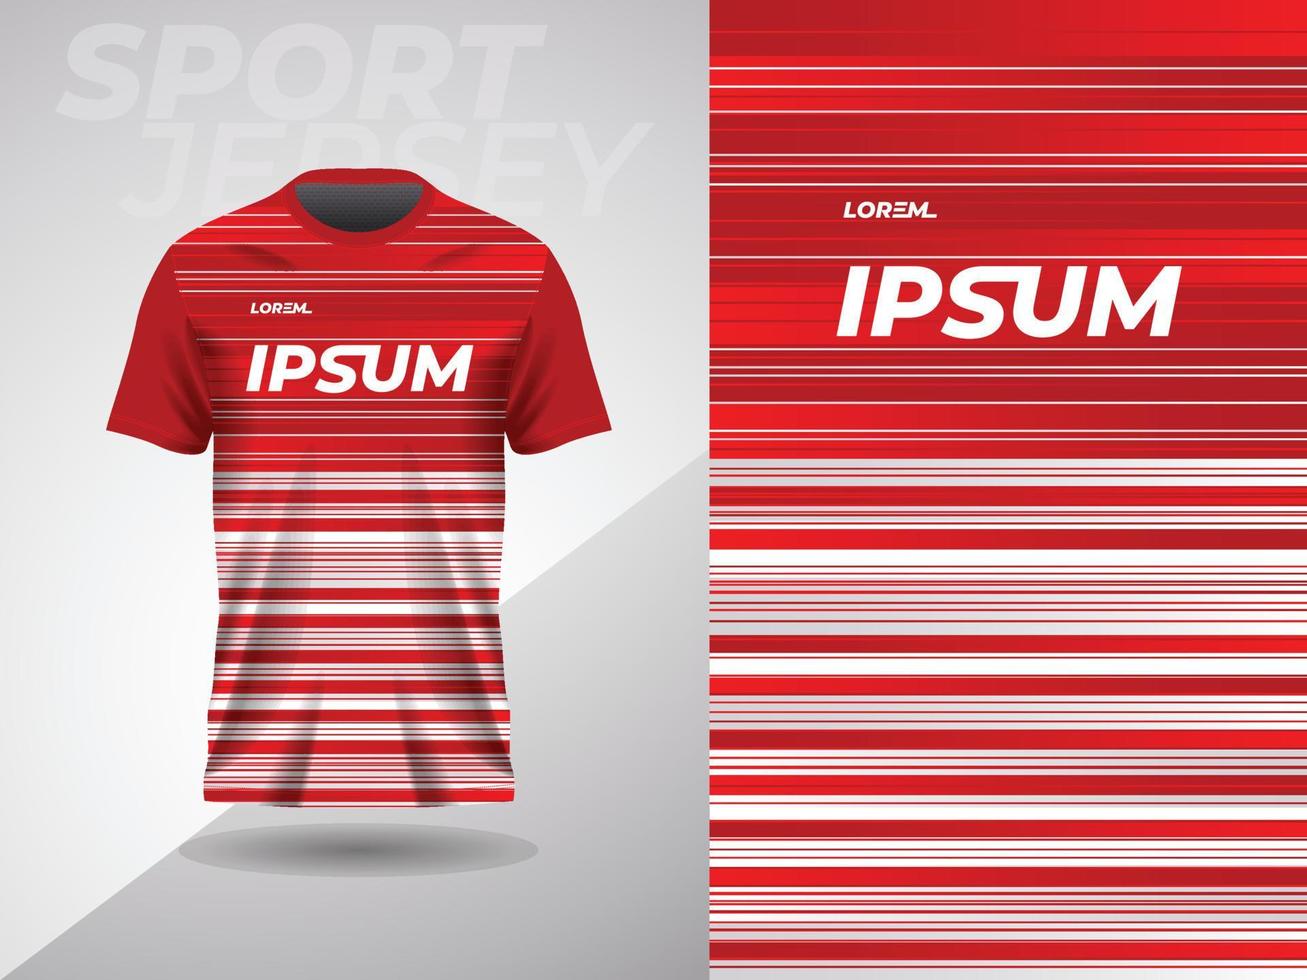 röd abstrakt skjorta sporter jersey design för fotboll fotboll tävlings gaming cykling löpning vektor